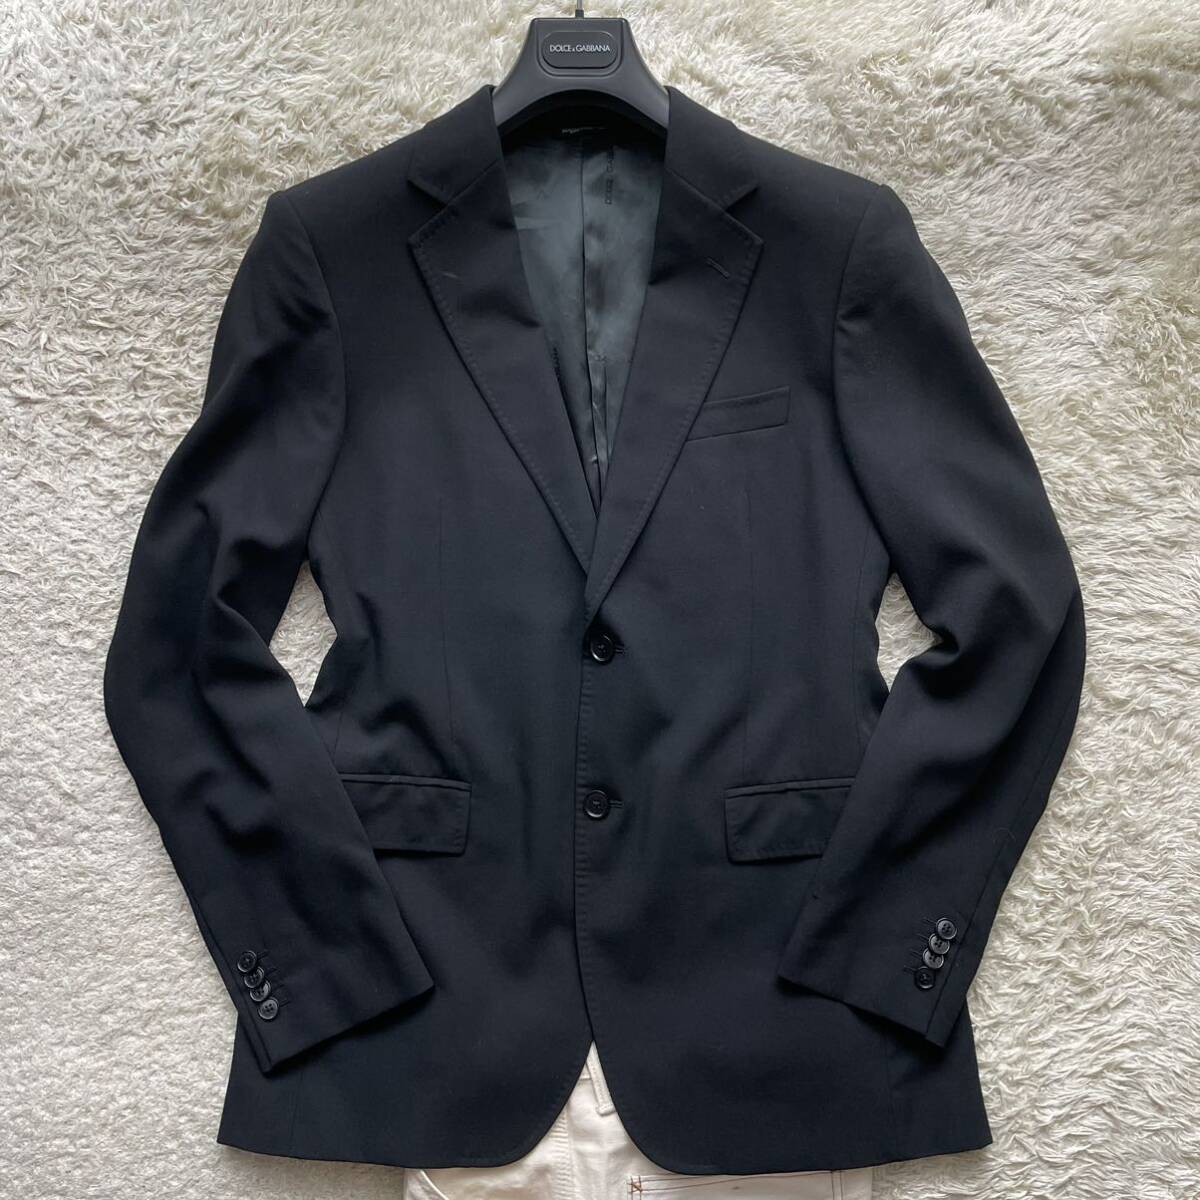  редкий XL размер соответствует Dolce & Gabbana [ лаковый черным очарован цвет .]DOLCE&GABBANA tailored jacket смокинг summer жакет черный 50